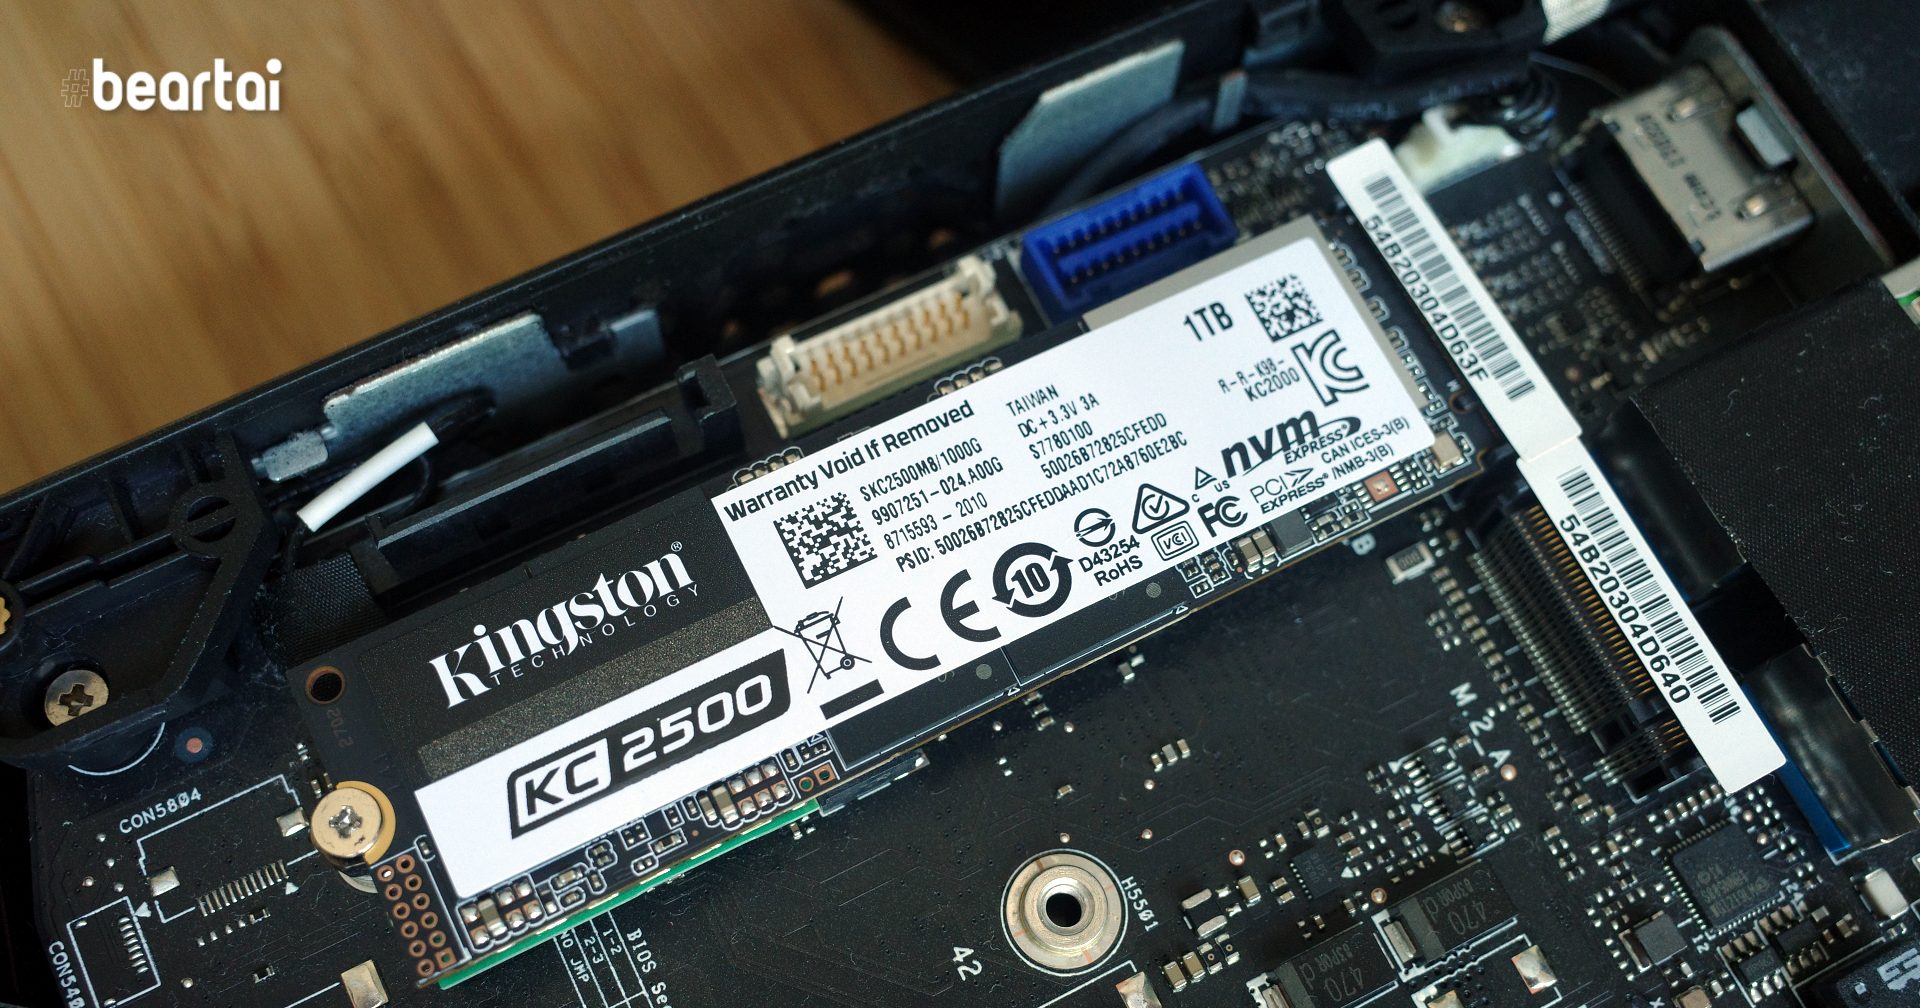 รีวิว Kingston KC2500 NVMe SSD สุดแรง อ่านไฟล์ 3.5 GB/s